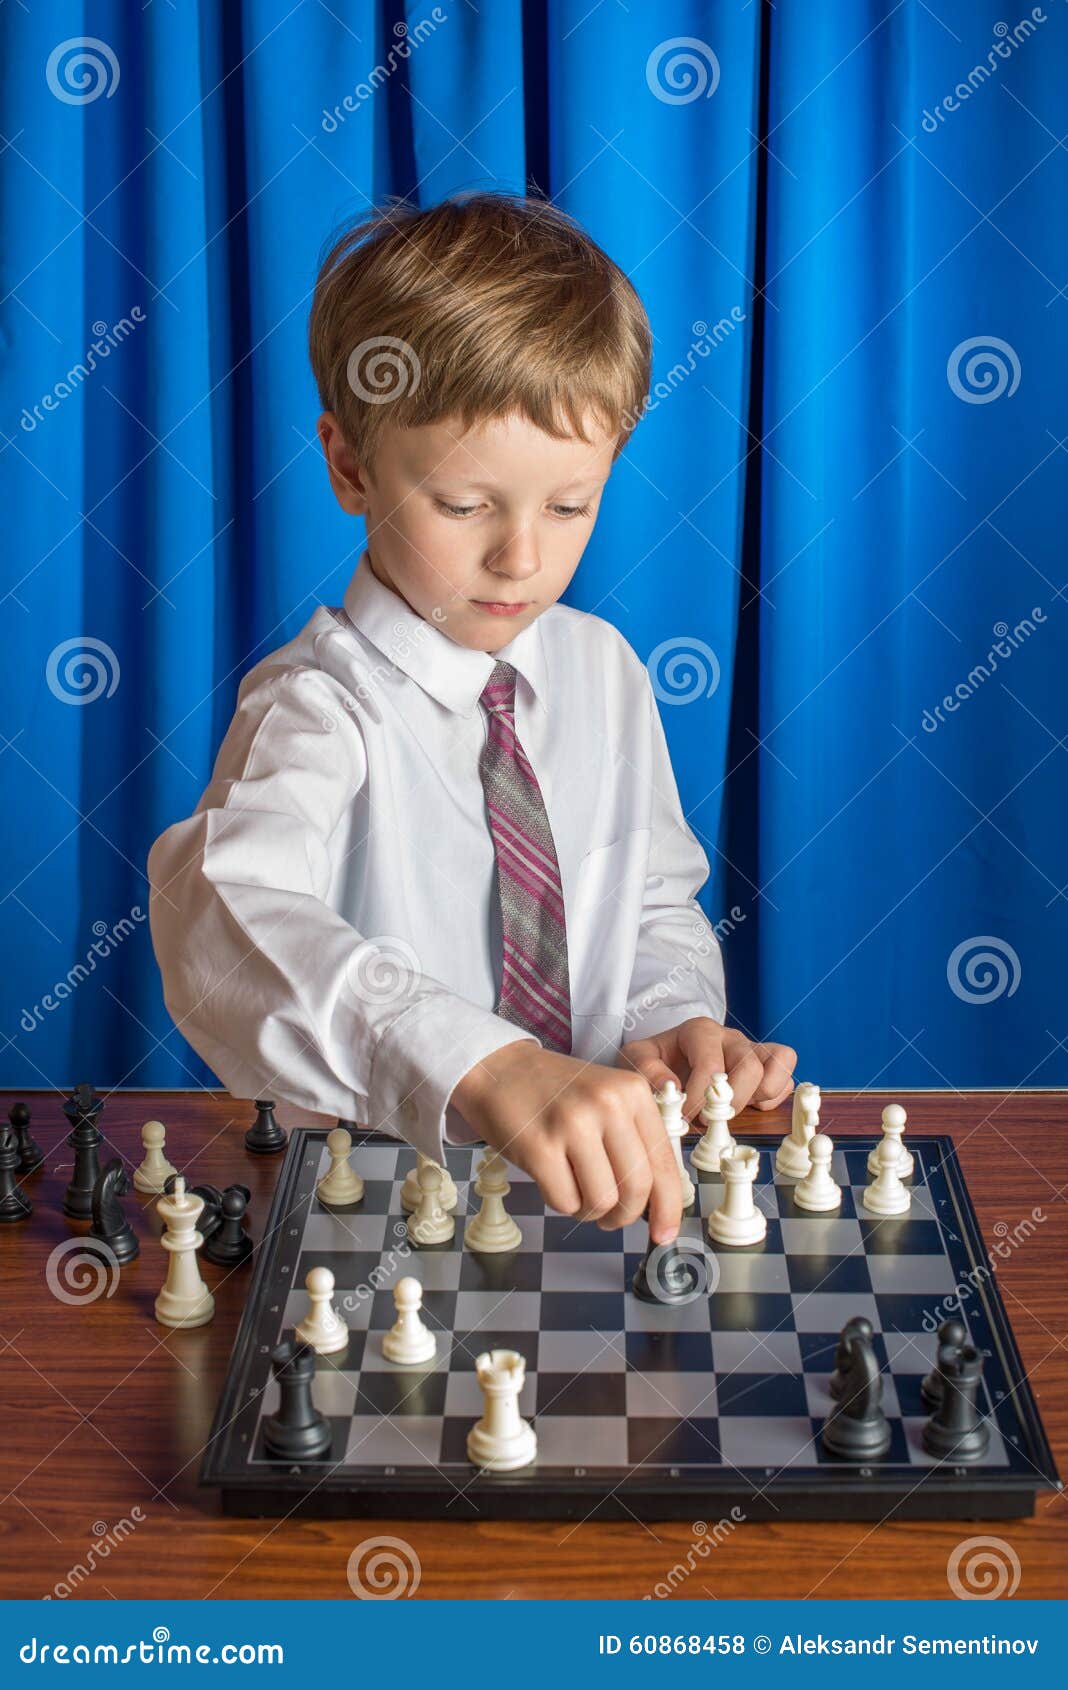 Увлечься игрой в шахматы. Мальчик шахматист. Шахматы для детей. Дети играют в шахматы. Красивые мальчики шахматисты.